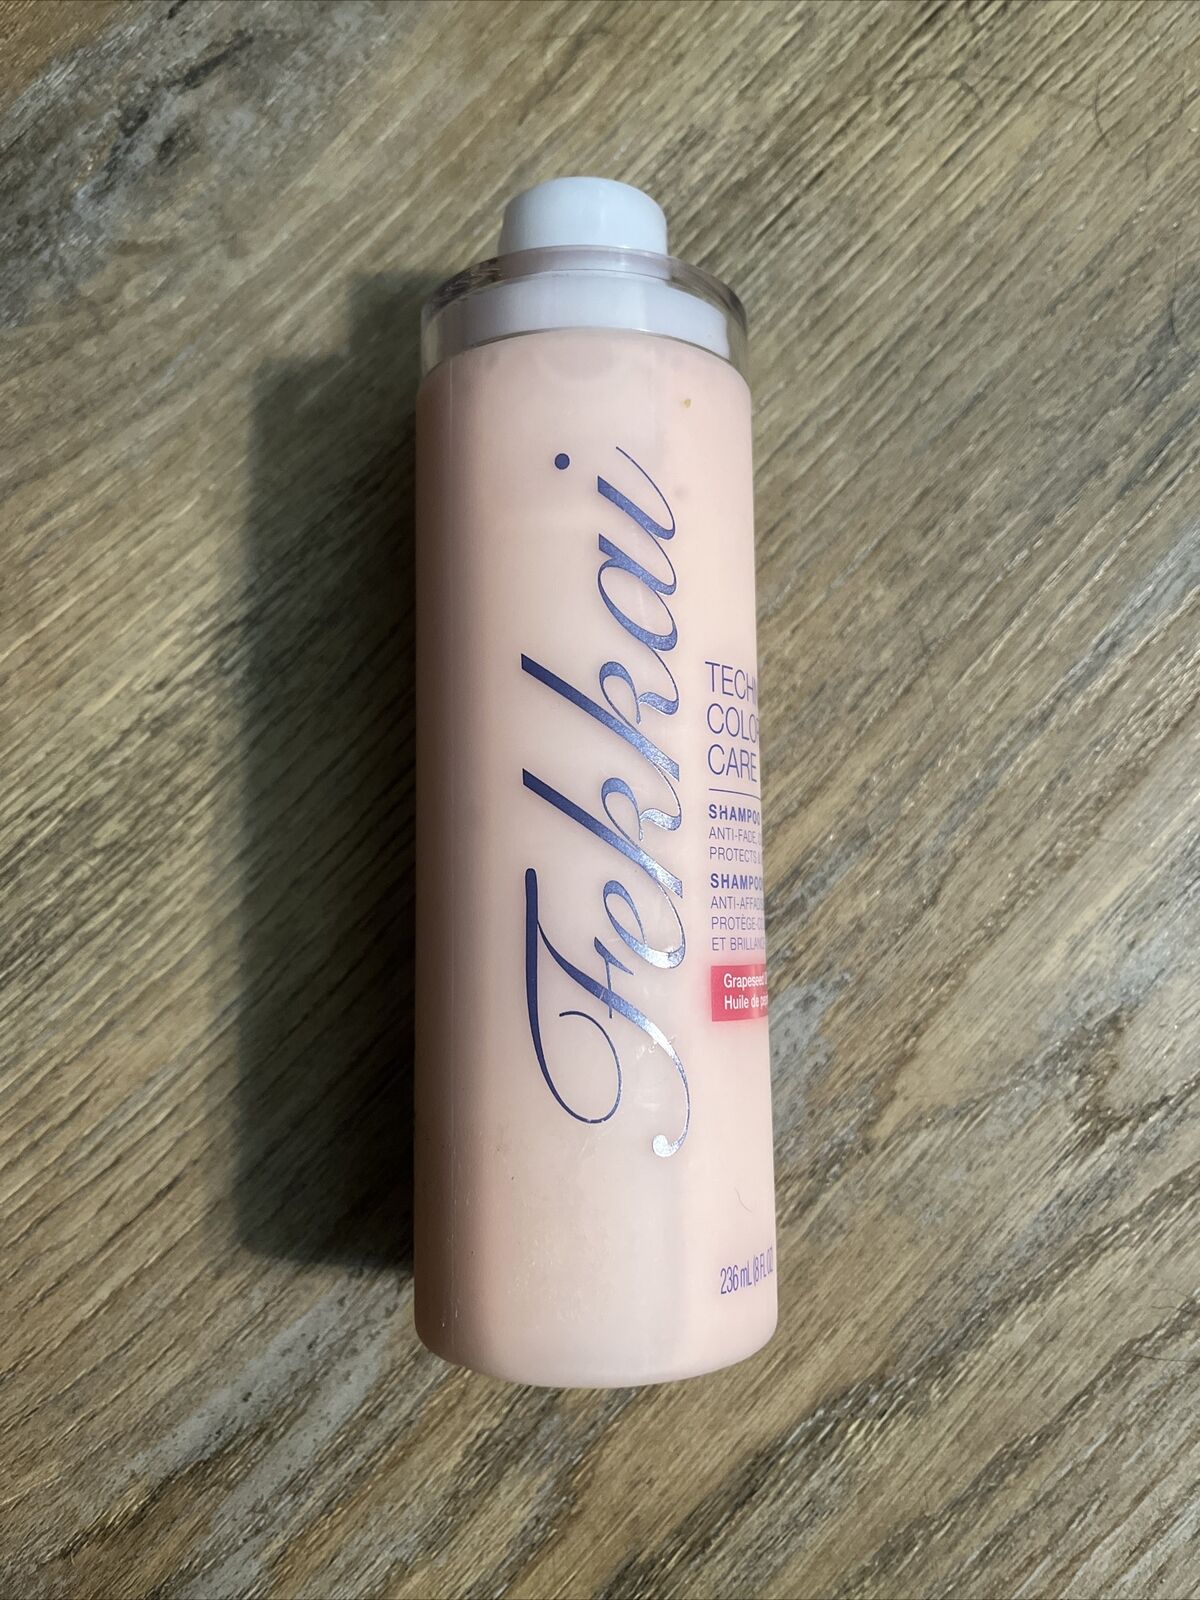 Fekkai Technician Color Care Shampoo Grapeseed Oil Anti-Fade 8oz NWOB SHIPS FREE